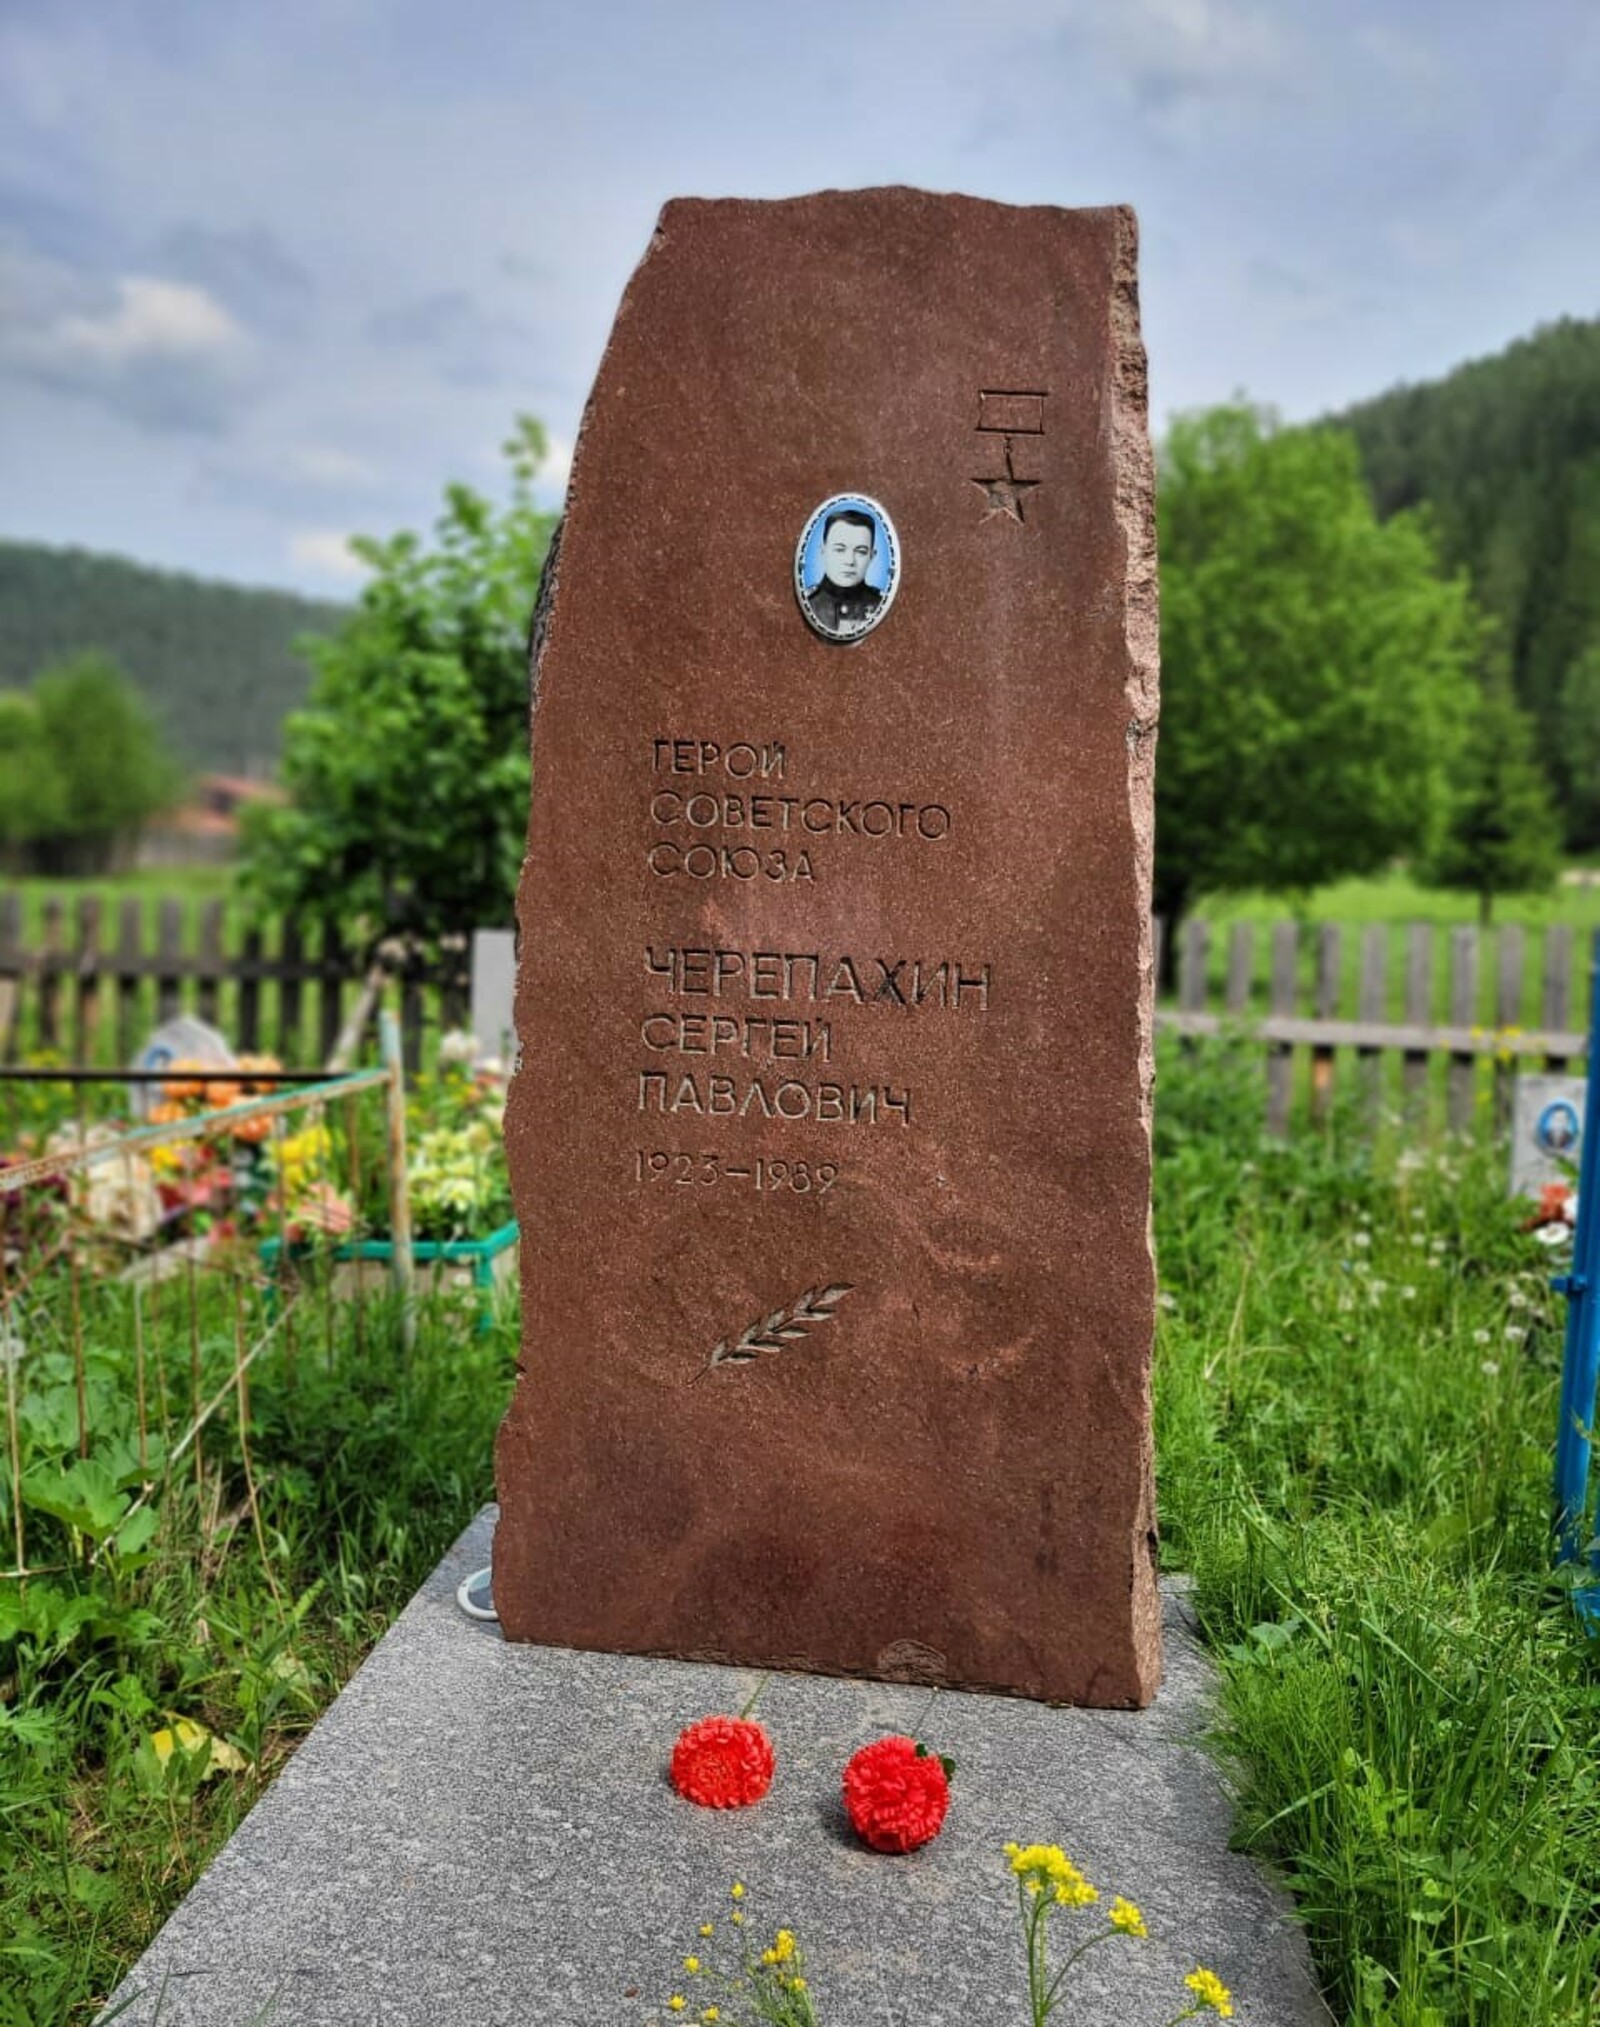 Сегодня 100 лет со дня рождения Героя Советского Союза Сергея Черепахина